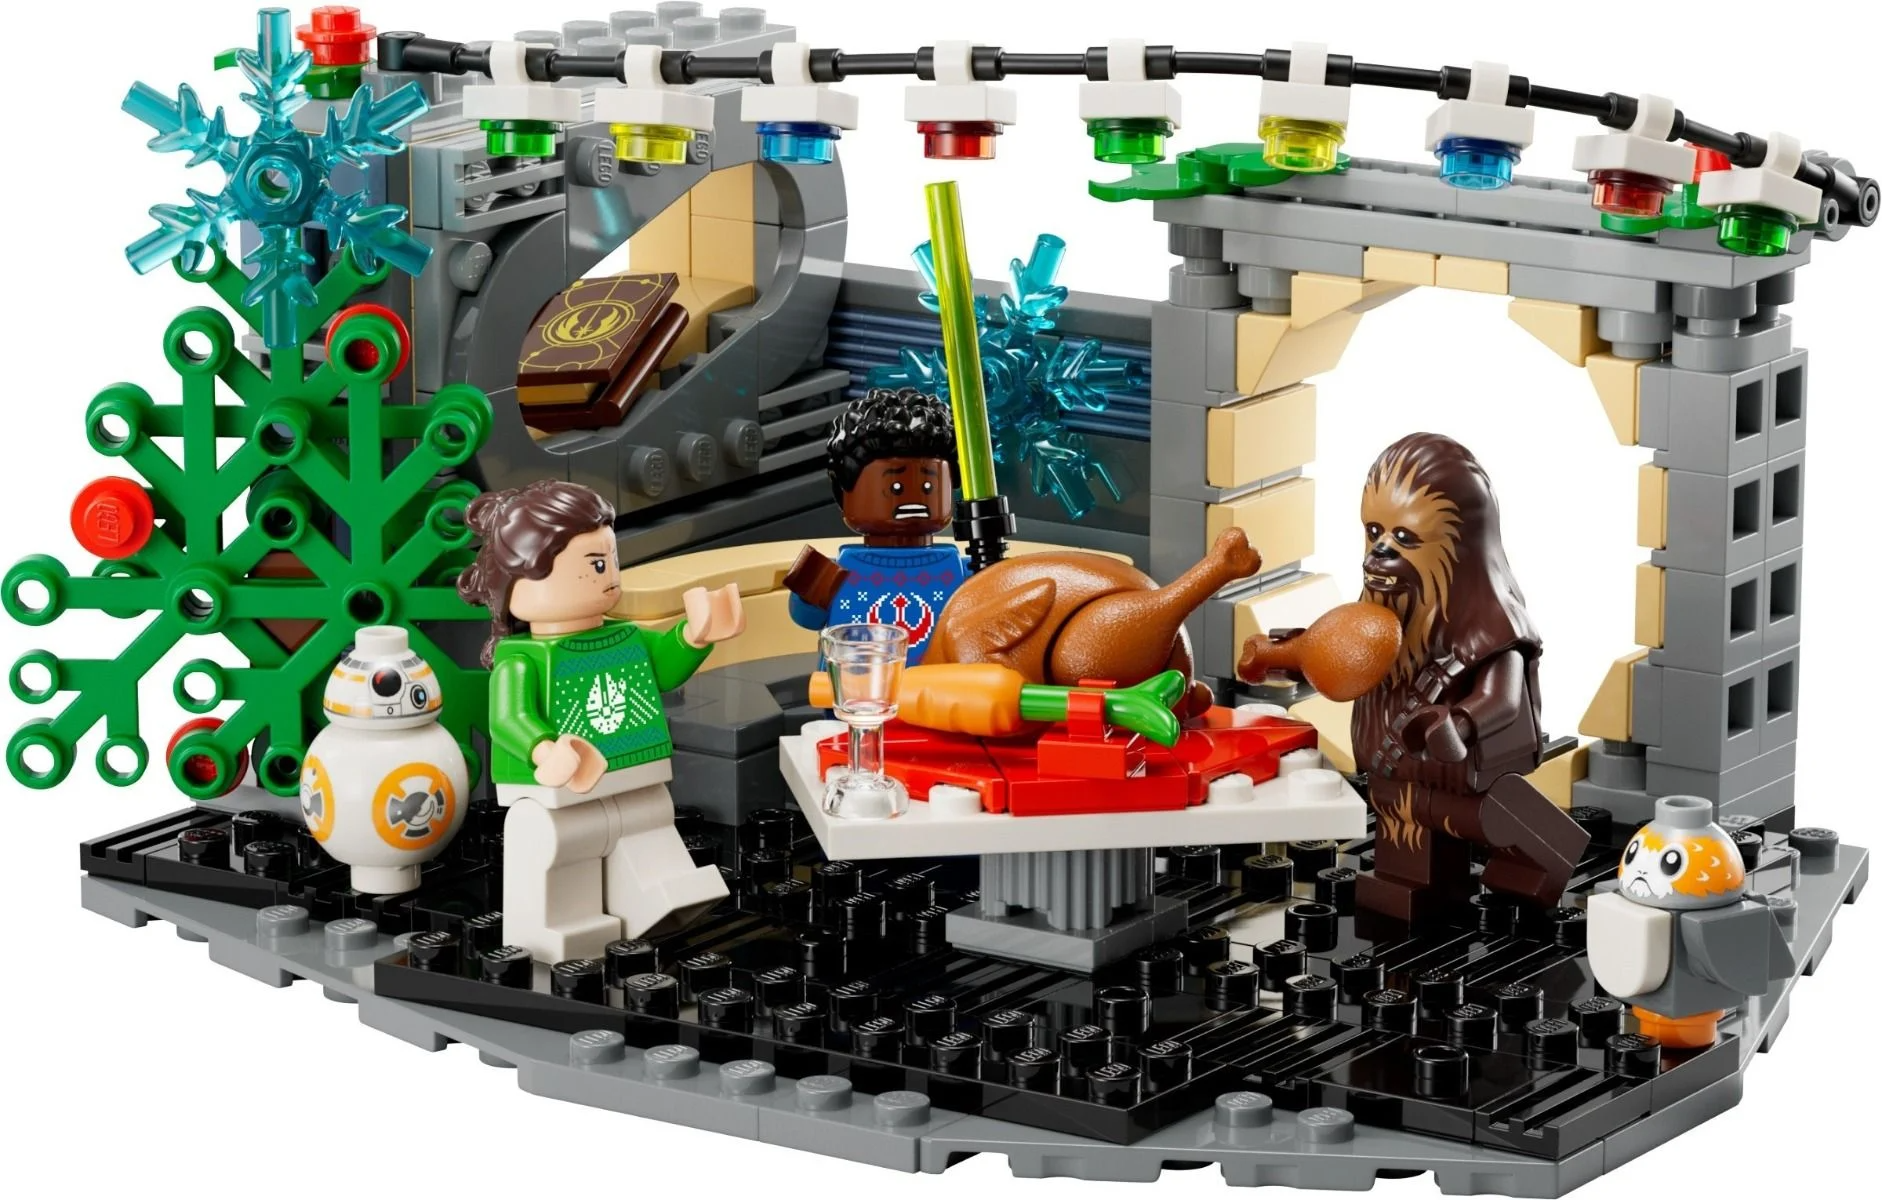 LEGO Star Wars Millennium Falcon Holiday Diorama